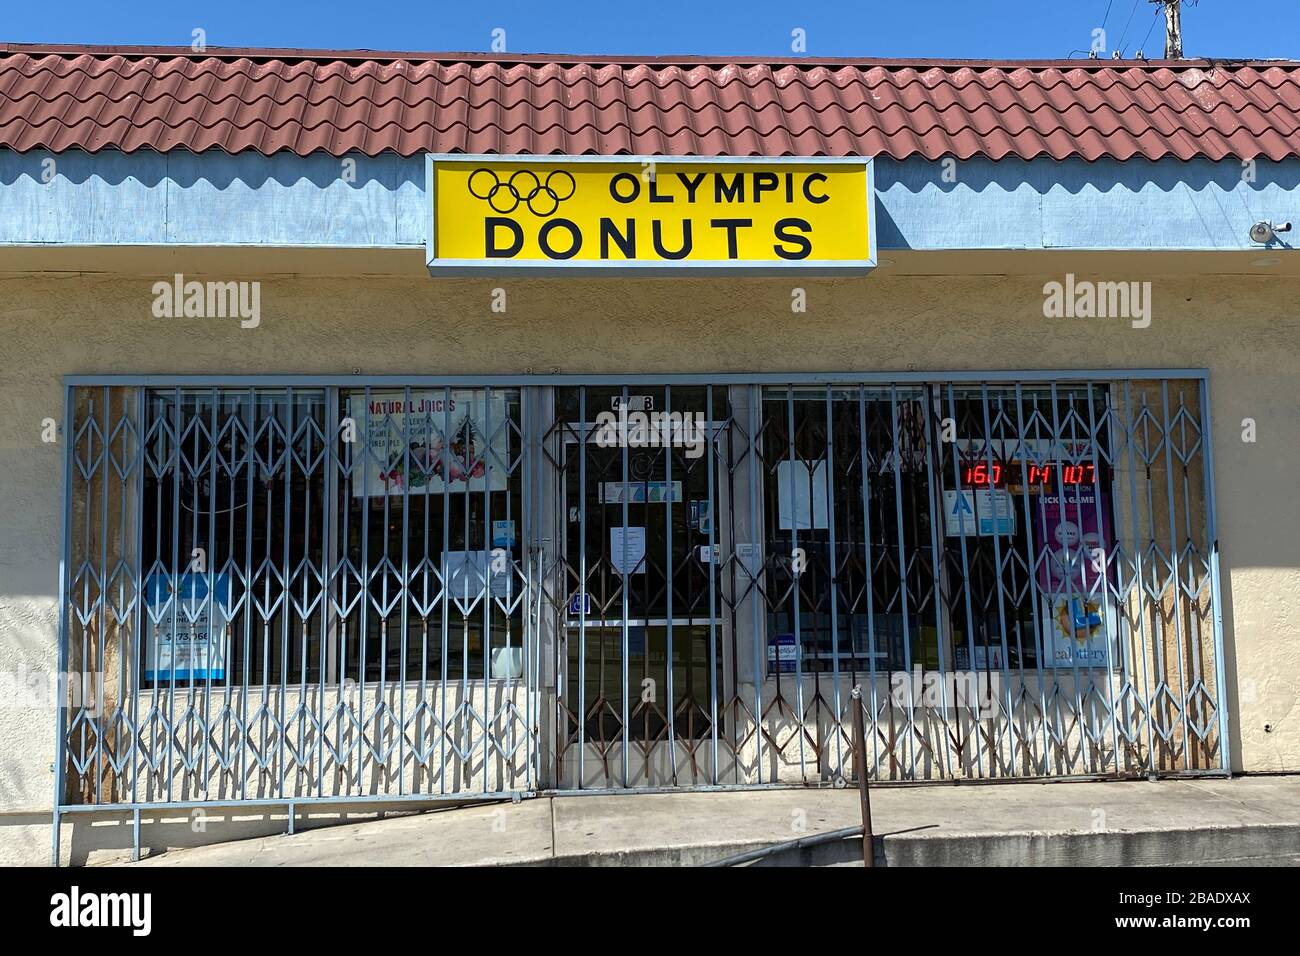 Vista generale del chiuso negozio di ciambelle olimpiche in mezzo al coroinavirus globale COVID-19 epidemia pandemica, Giovedi, 26 marzo 2020, a Los Angeles. (Foto di IOS/Espa-Images) Foto Stock